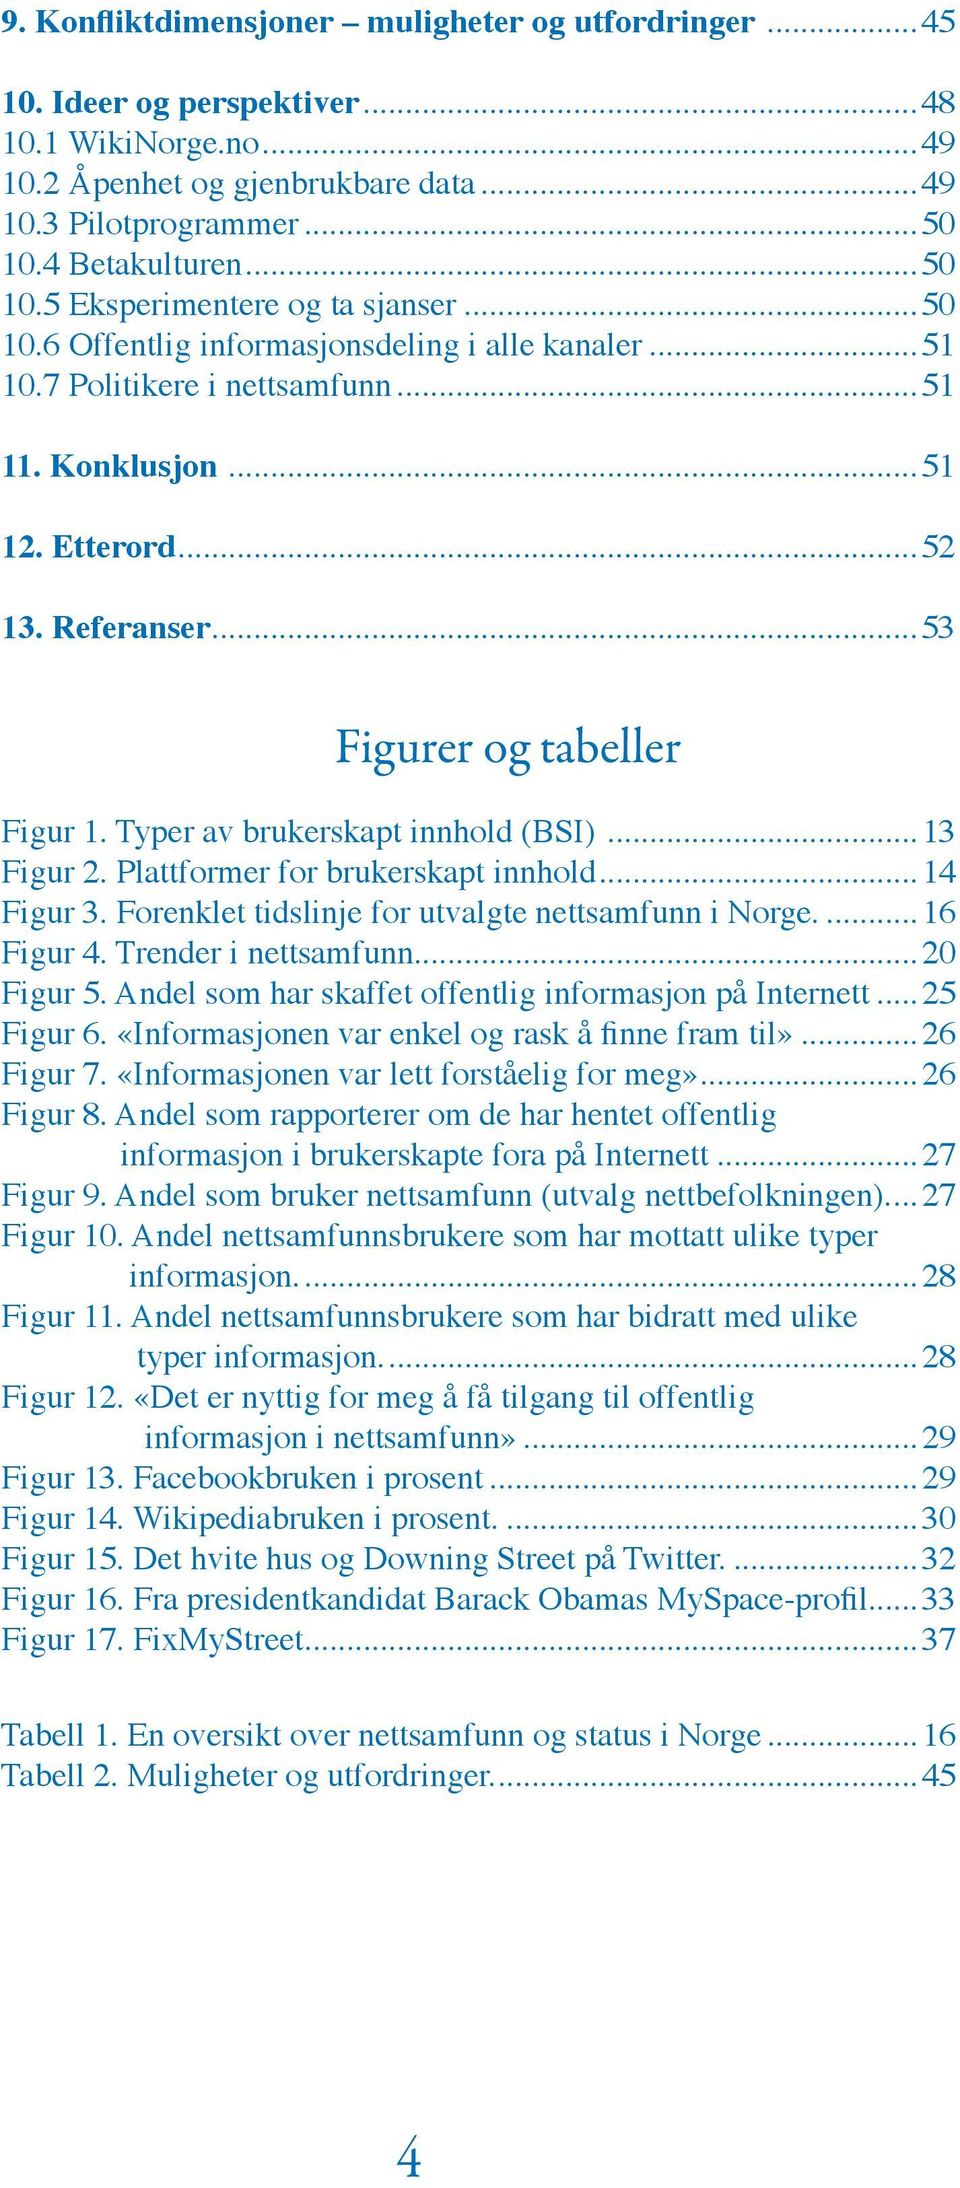 Referanser...53 Figurer og tabeller Figur 1. Typer av brukerskapt innhold (BSI)...13 Figur 2. Plattformer for brukerskapt innhold...14 Figur 3. Forenklet tidslinje for utvalgte nettsamfunn i Norge.